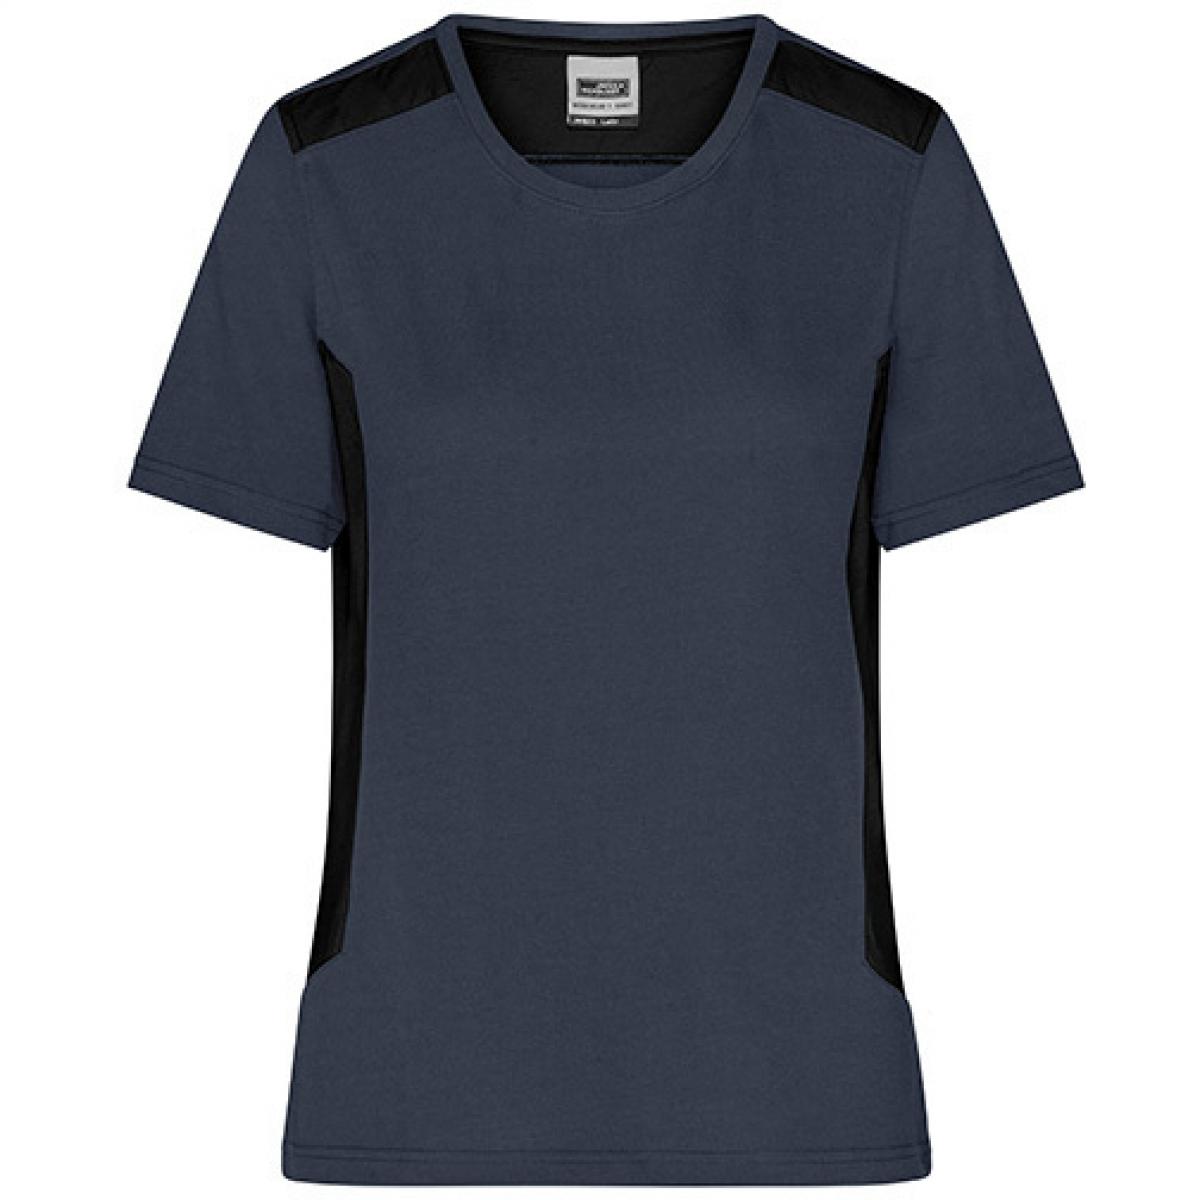 Hersteller: James+Nicholson Herstellernummer: JN1823 Artikelbezeichnung: Damen T, Ladies‘ Workwear T-Shirt -STRONG- Waschbar bis 60 ° Farbe: Carbon/Black